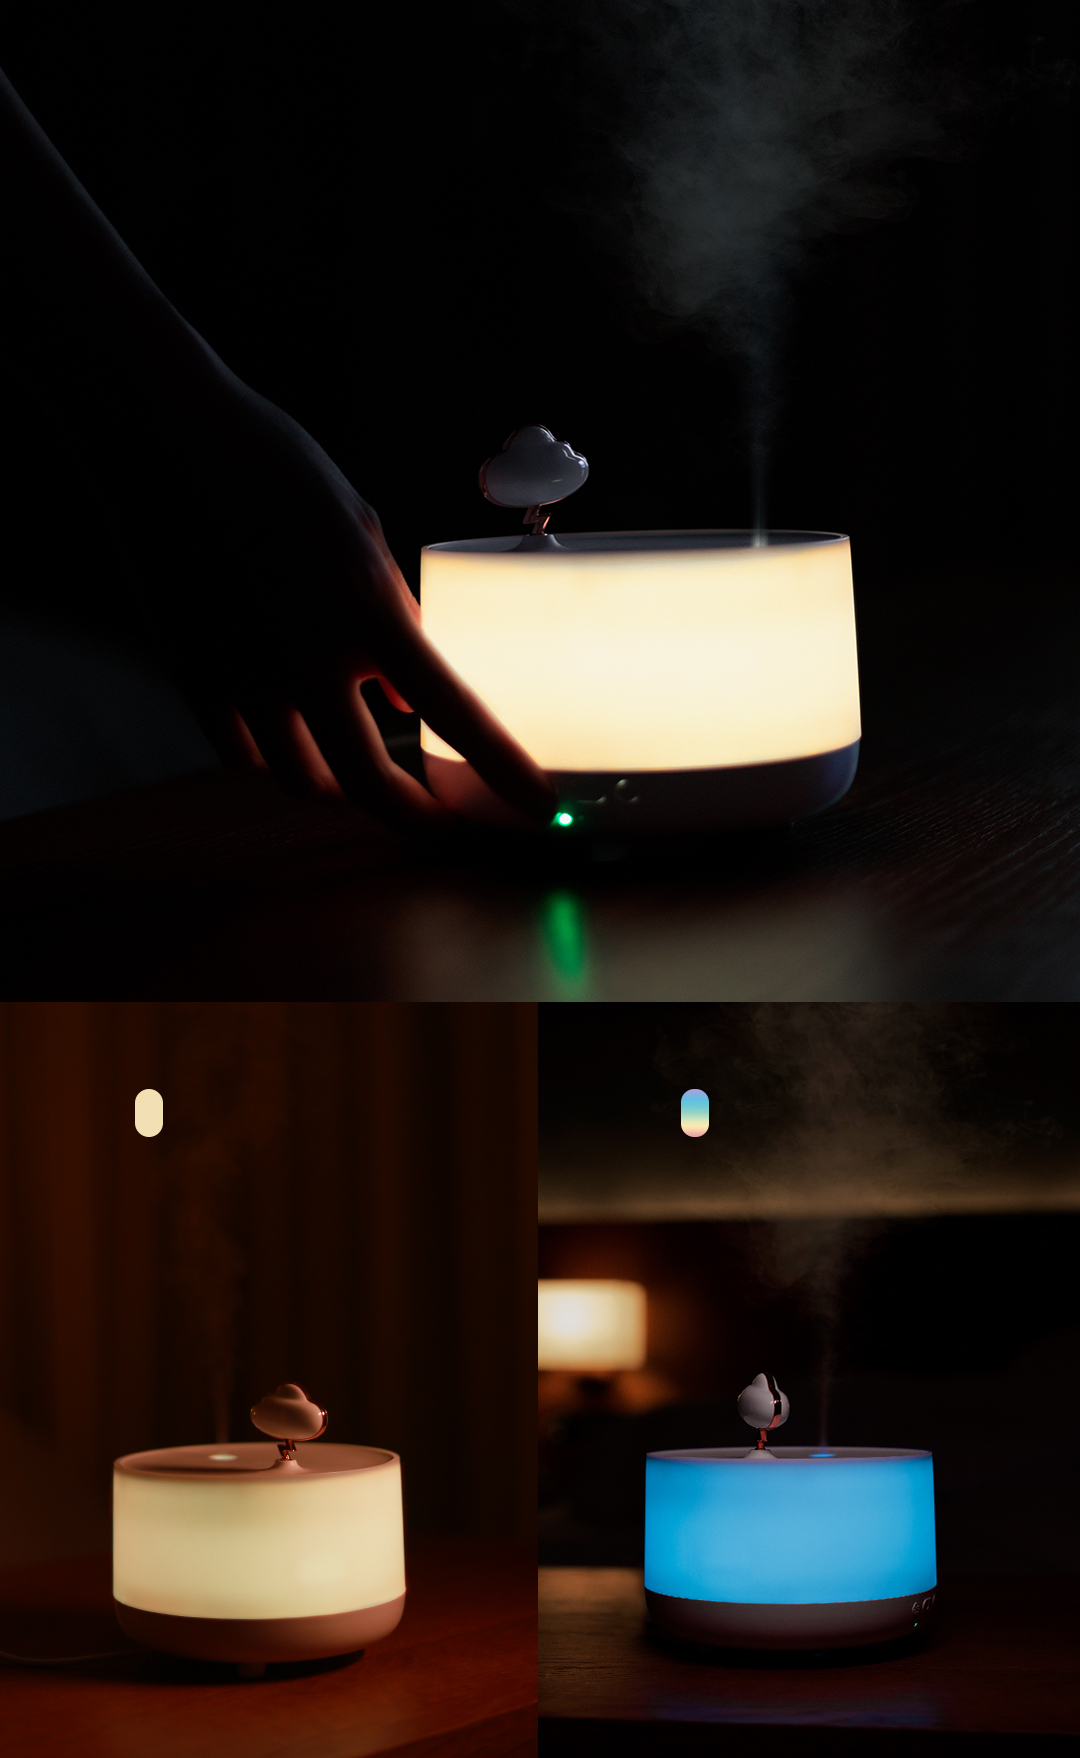 Uareliffe Cloud Aroma Diffuser Humidifier Với ánh sáng lãng mạn Thiết kế hộp âm nhạc cổ điển Cắm USB Máy tạo ẩm không khí siêu âm Chống cháy khô 3 tốc độ Chức năng hẹn giờ Tắt tiếng Máy tạo sương có đèn ban đêm Có thể thêm tinh dầu